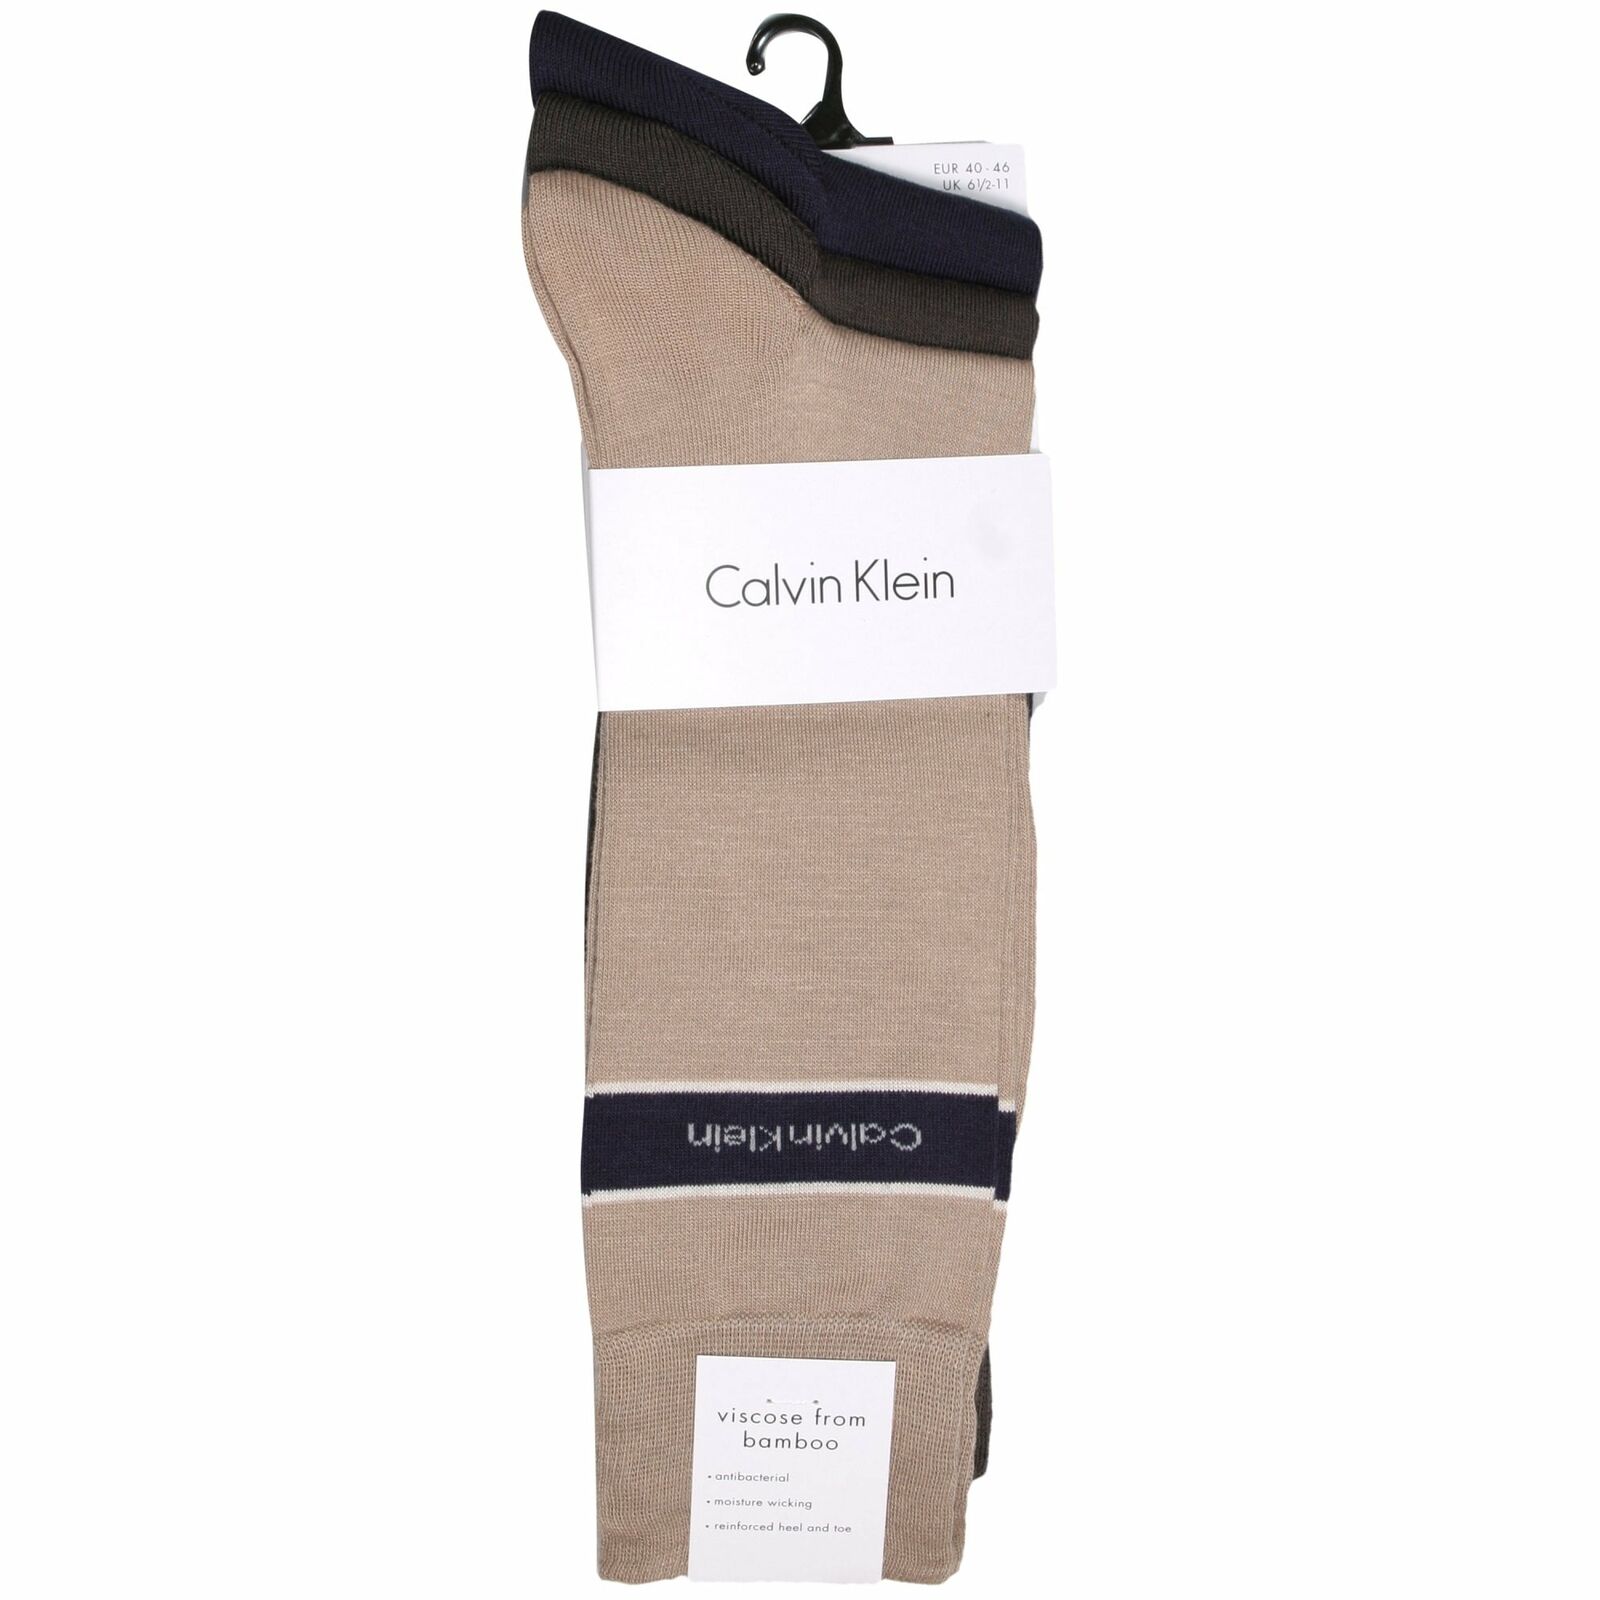 Calvin Klein 3-Pack Logo Band Men's Bamboo Socks, Navy/Mushroom/Taupe One  Size 8718824956183 | eBay